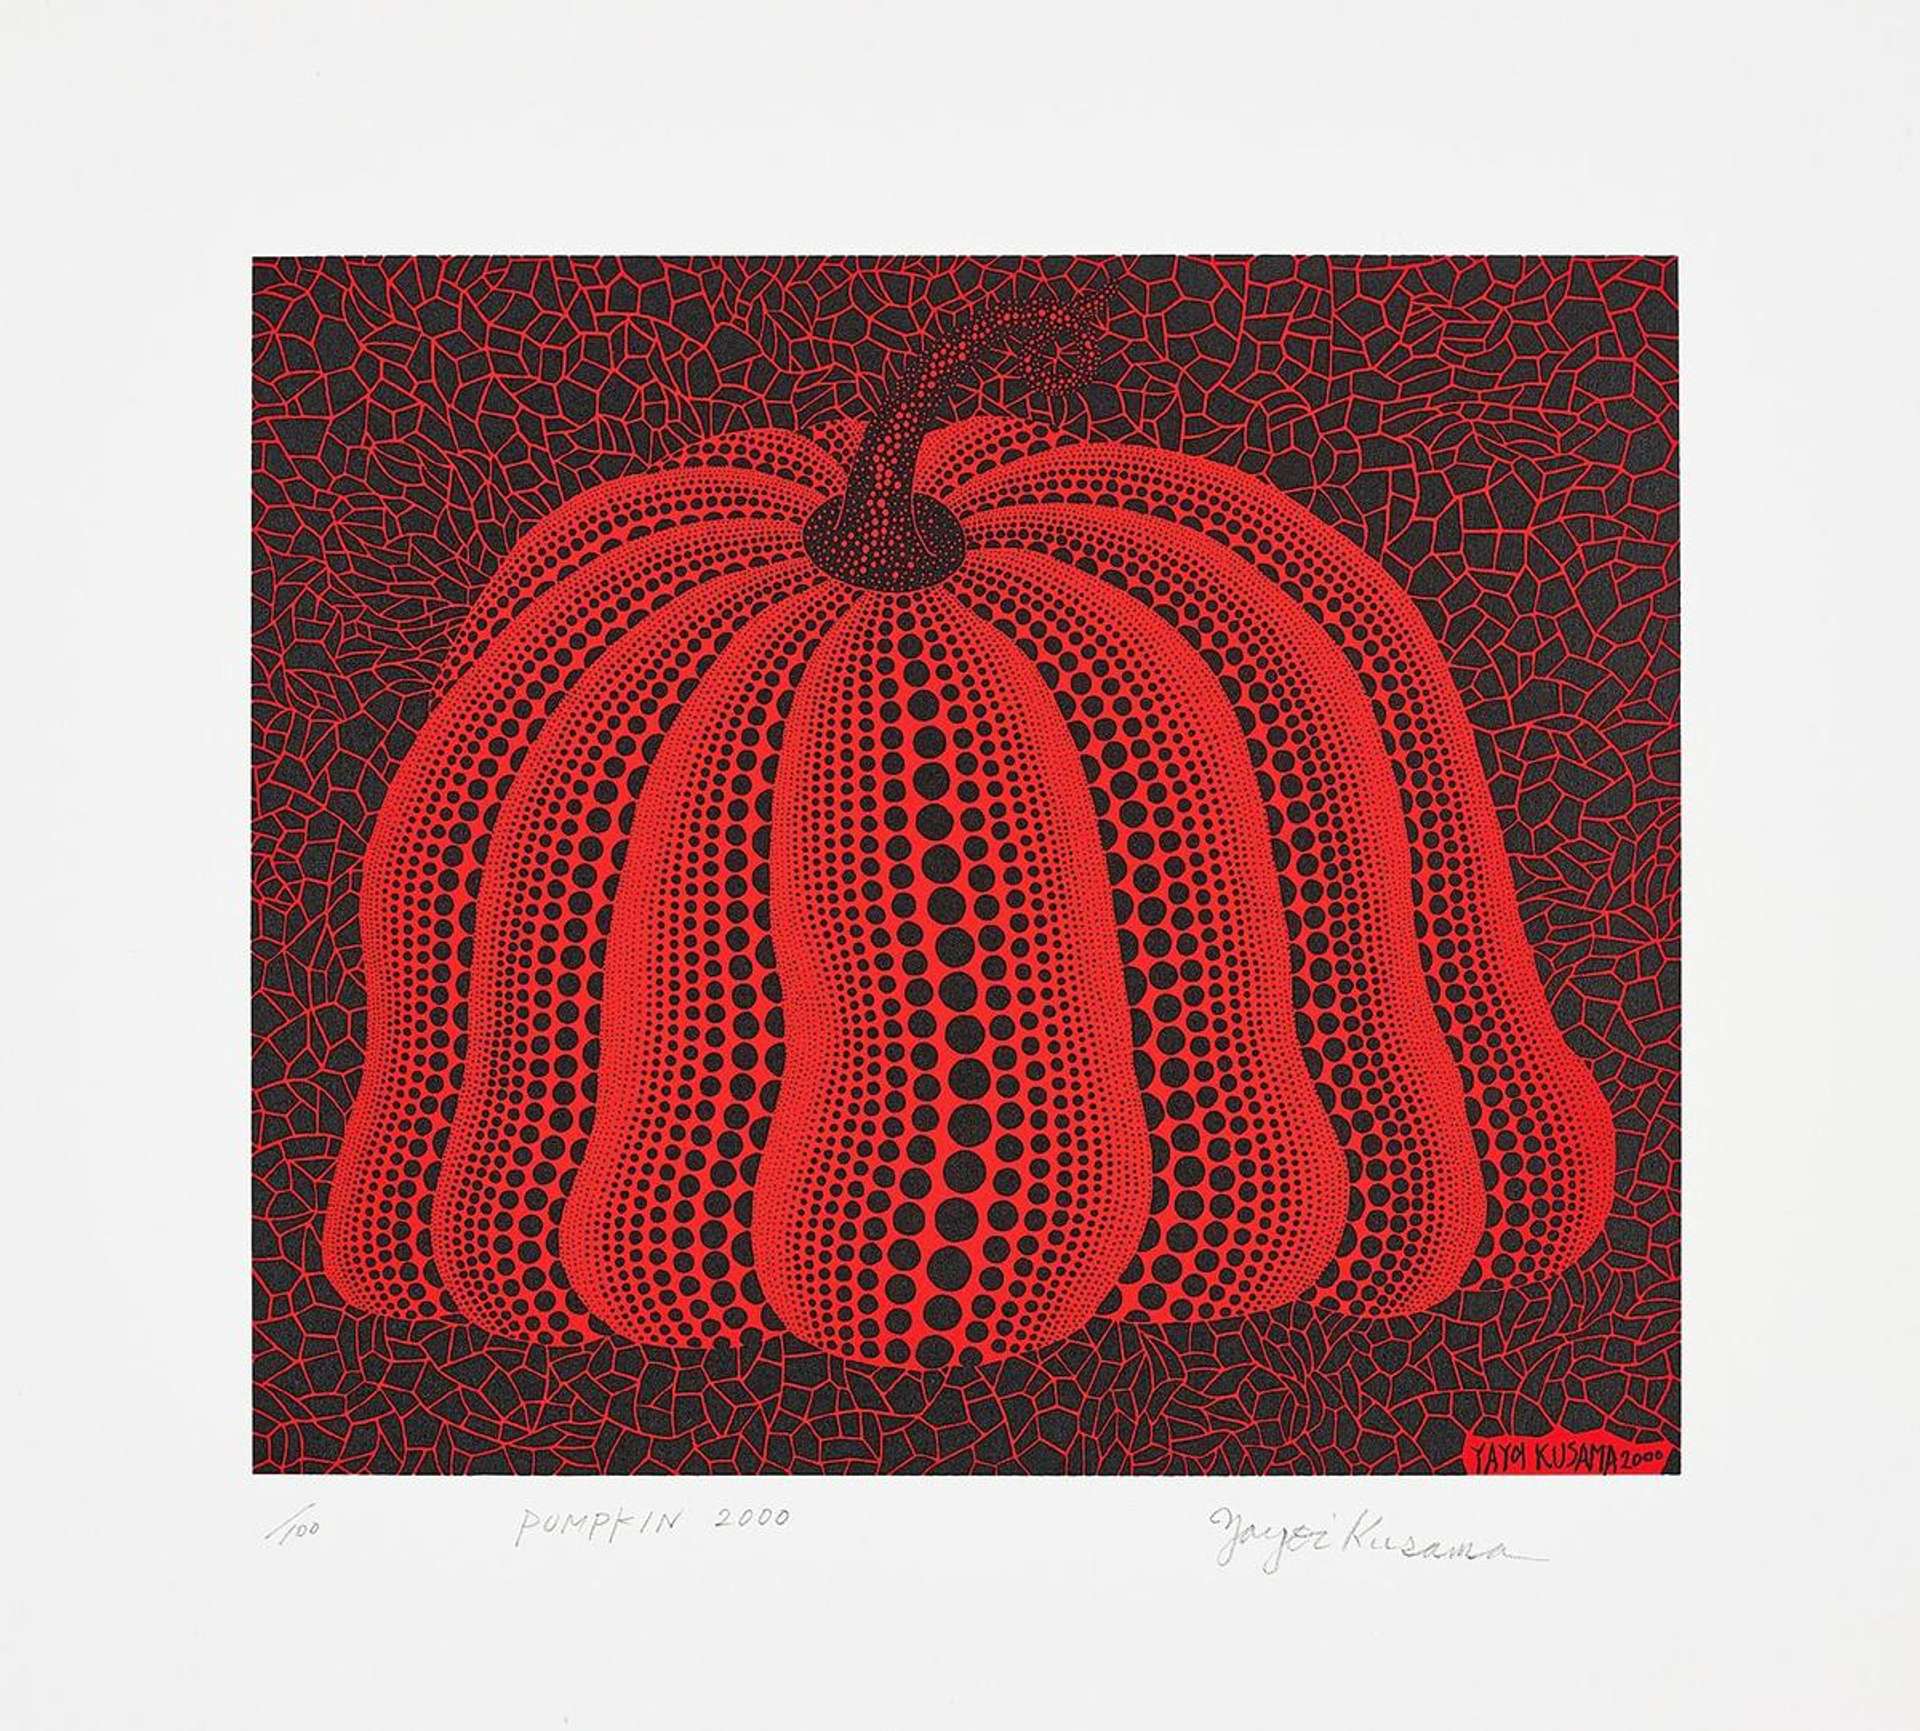 Yayoi Kusama: Pumpkin 2000 (red) - Signed Print